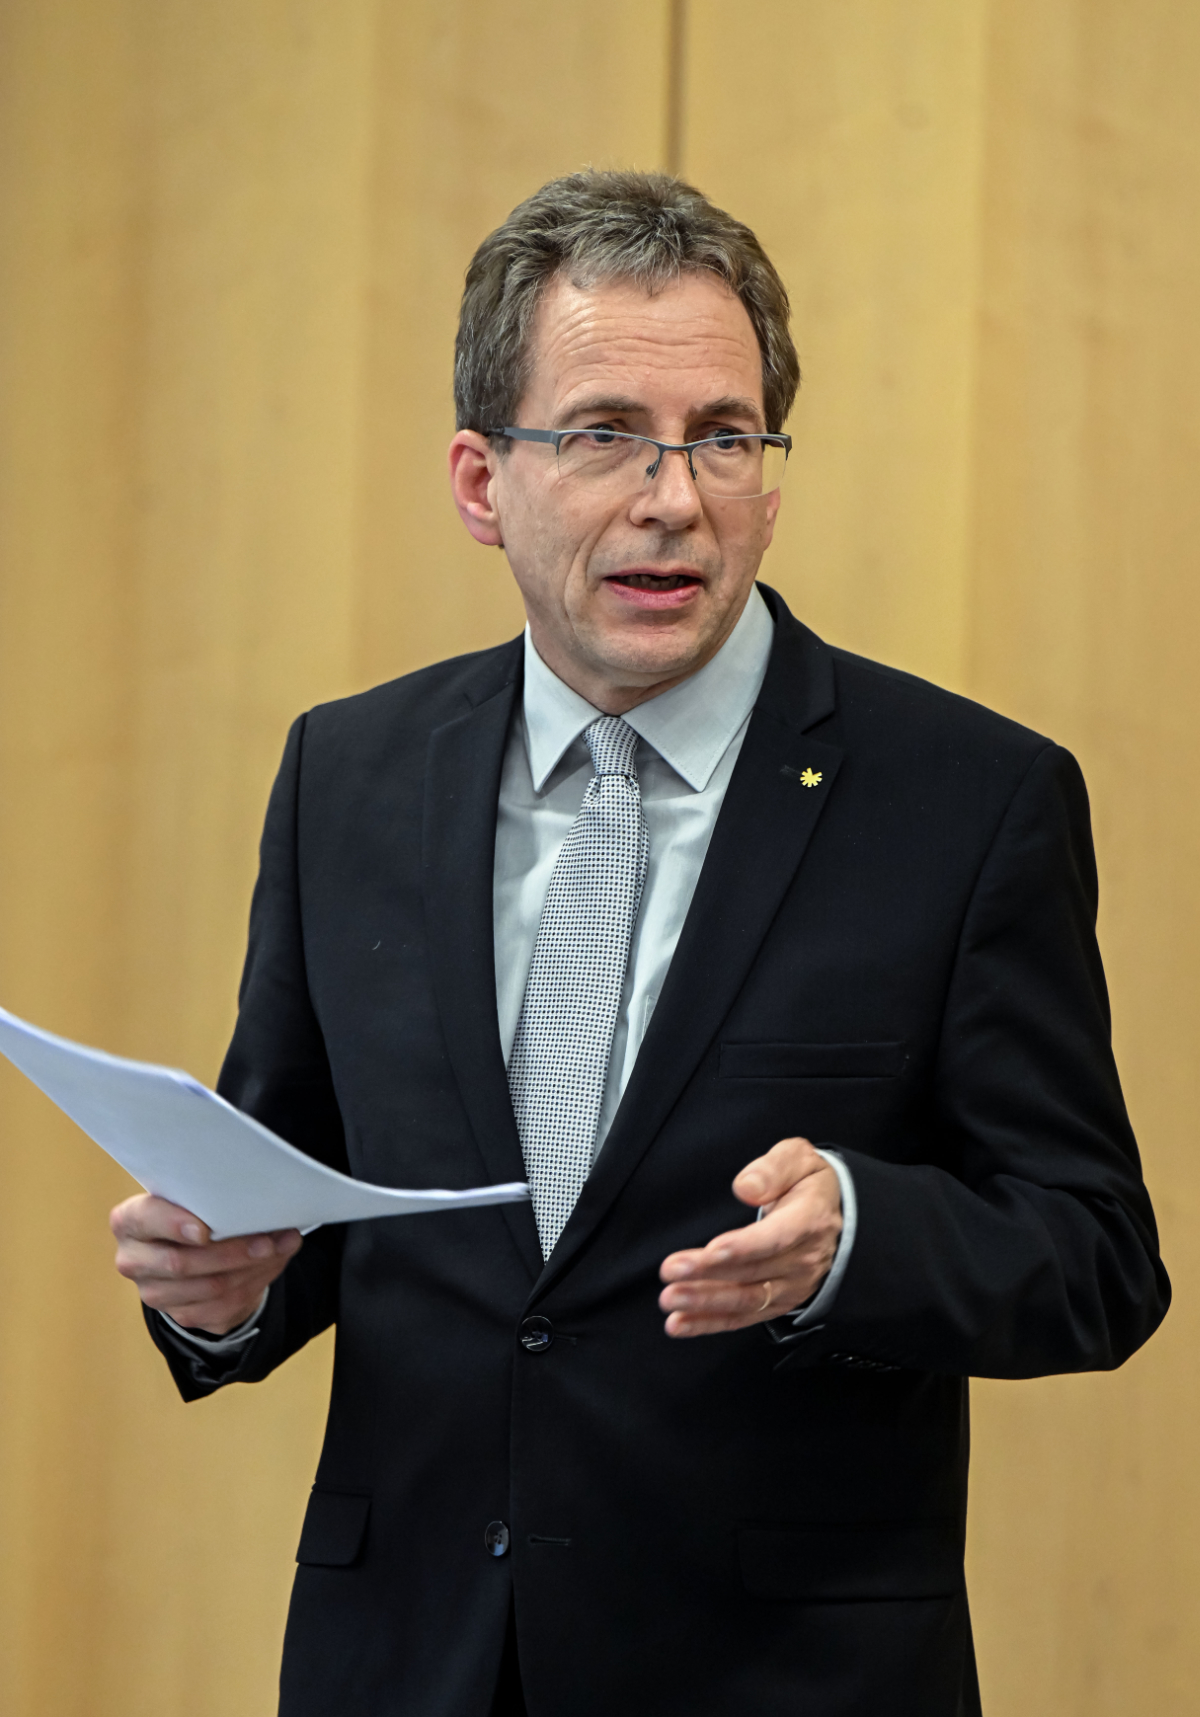 Pressekonferenz am 26. Januar 2023 im Generallandesarchiv Karlsruhe: Landesarchiv-Präsident Prof. Dr. Gerald Maier 